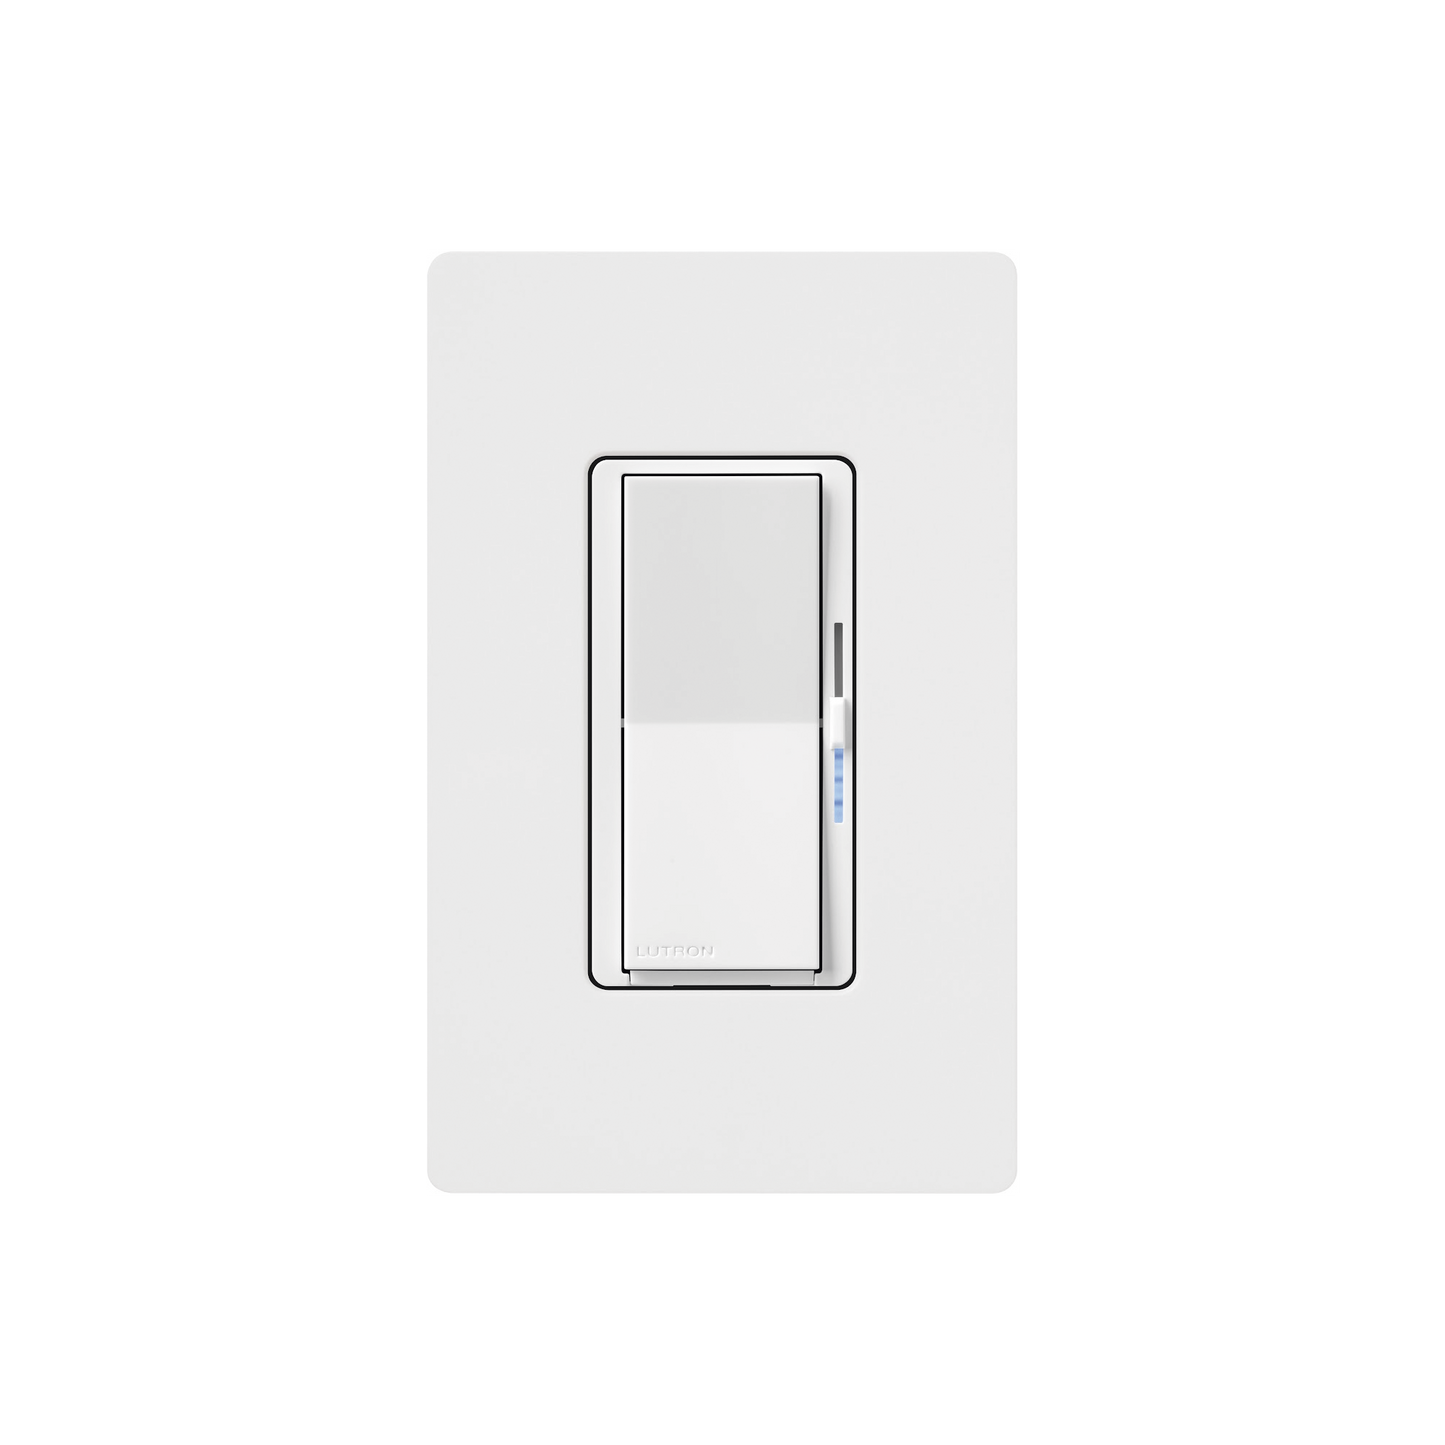 (Caseta Wireless) Atenuador de pared. Aumenta/Disminuye Intensidad de Iluminación.  No requiere cable neutro. 150W LED / 600W INC/HAL